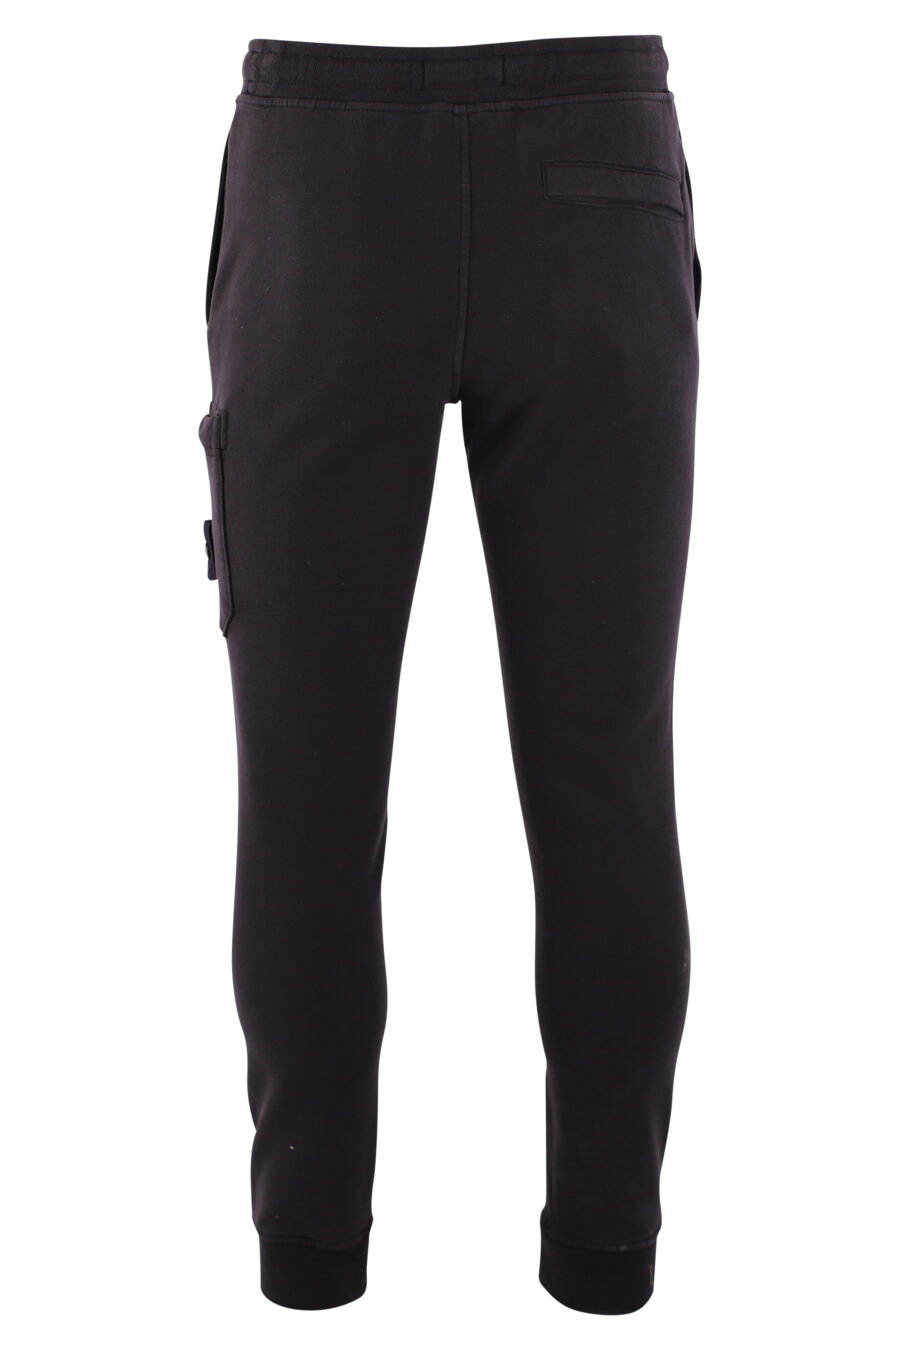 Pantalón de chándal negro con parche lateral - IMG 3216